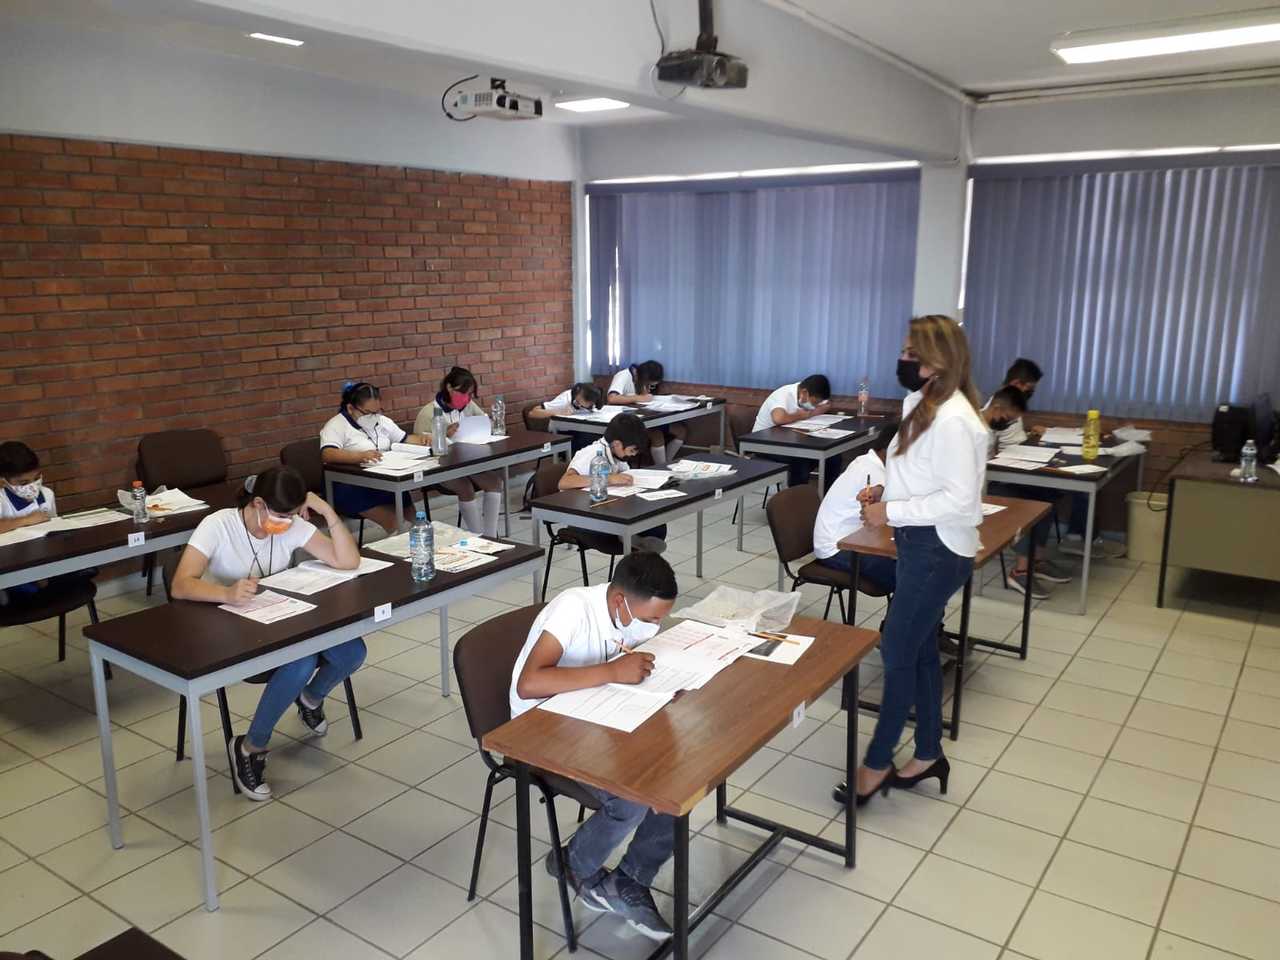 Ayer se realizó la evaluación de la Olimpiada en dos sedes del municipio de Torreón y acudieron alumnos de toda la región. (EL SIGLO DE TORREÓN)